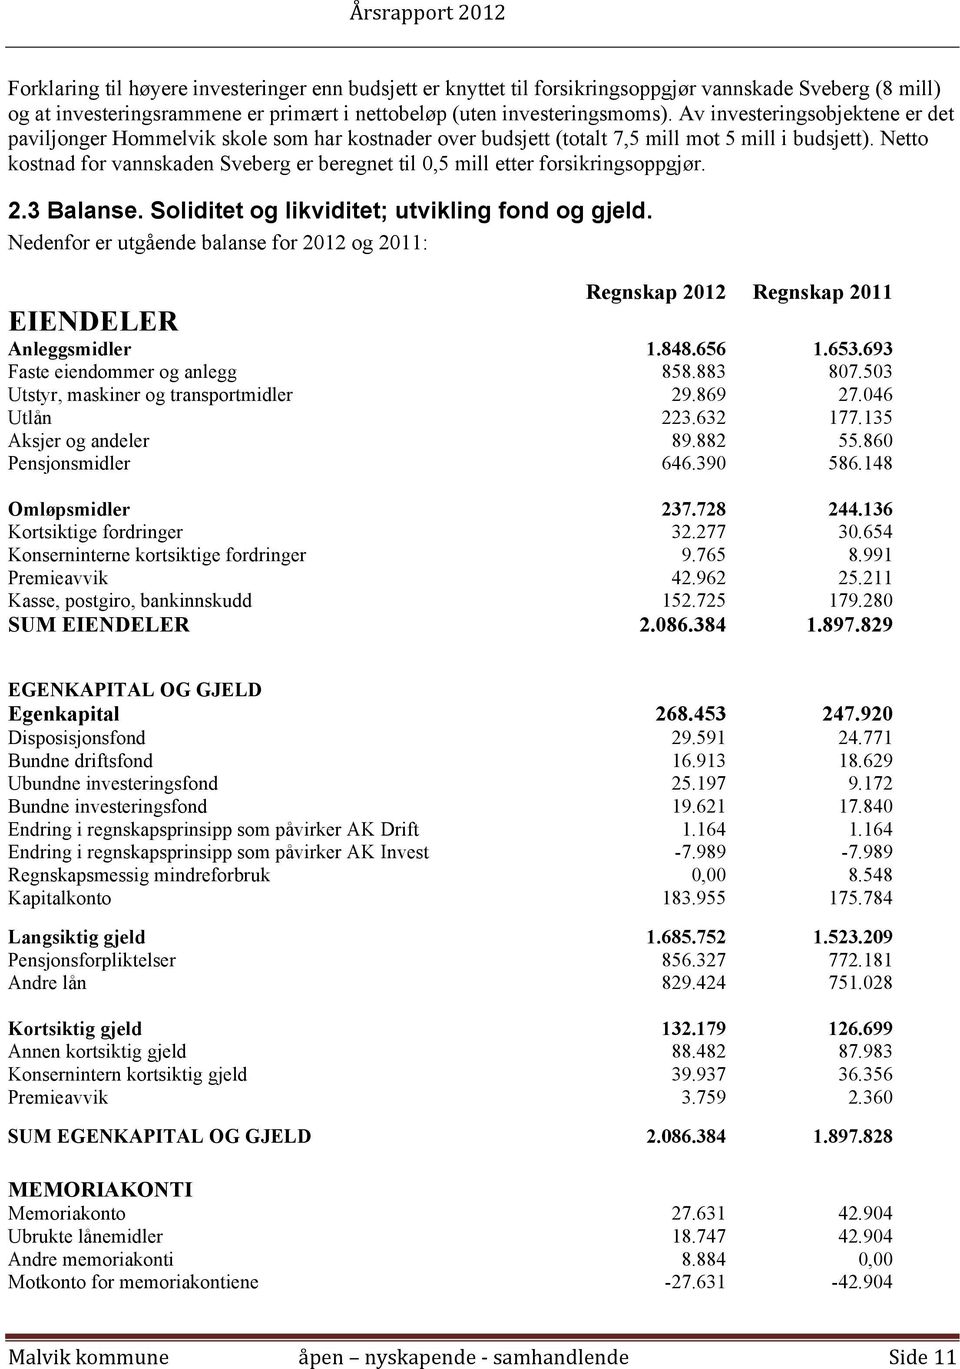 Netto kostnad for vannskaden Sveberg er beregnet til 0,5 mill etter forsikringsoppgjør. 2.3 Balanse. Soliditet og likviditet; utvikling fond og gjeld.